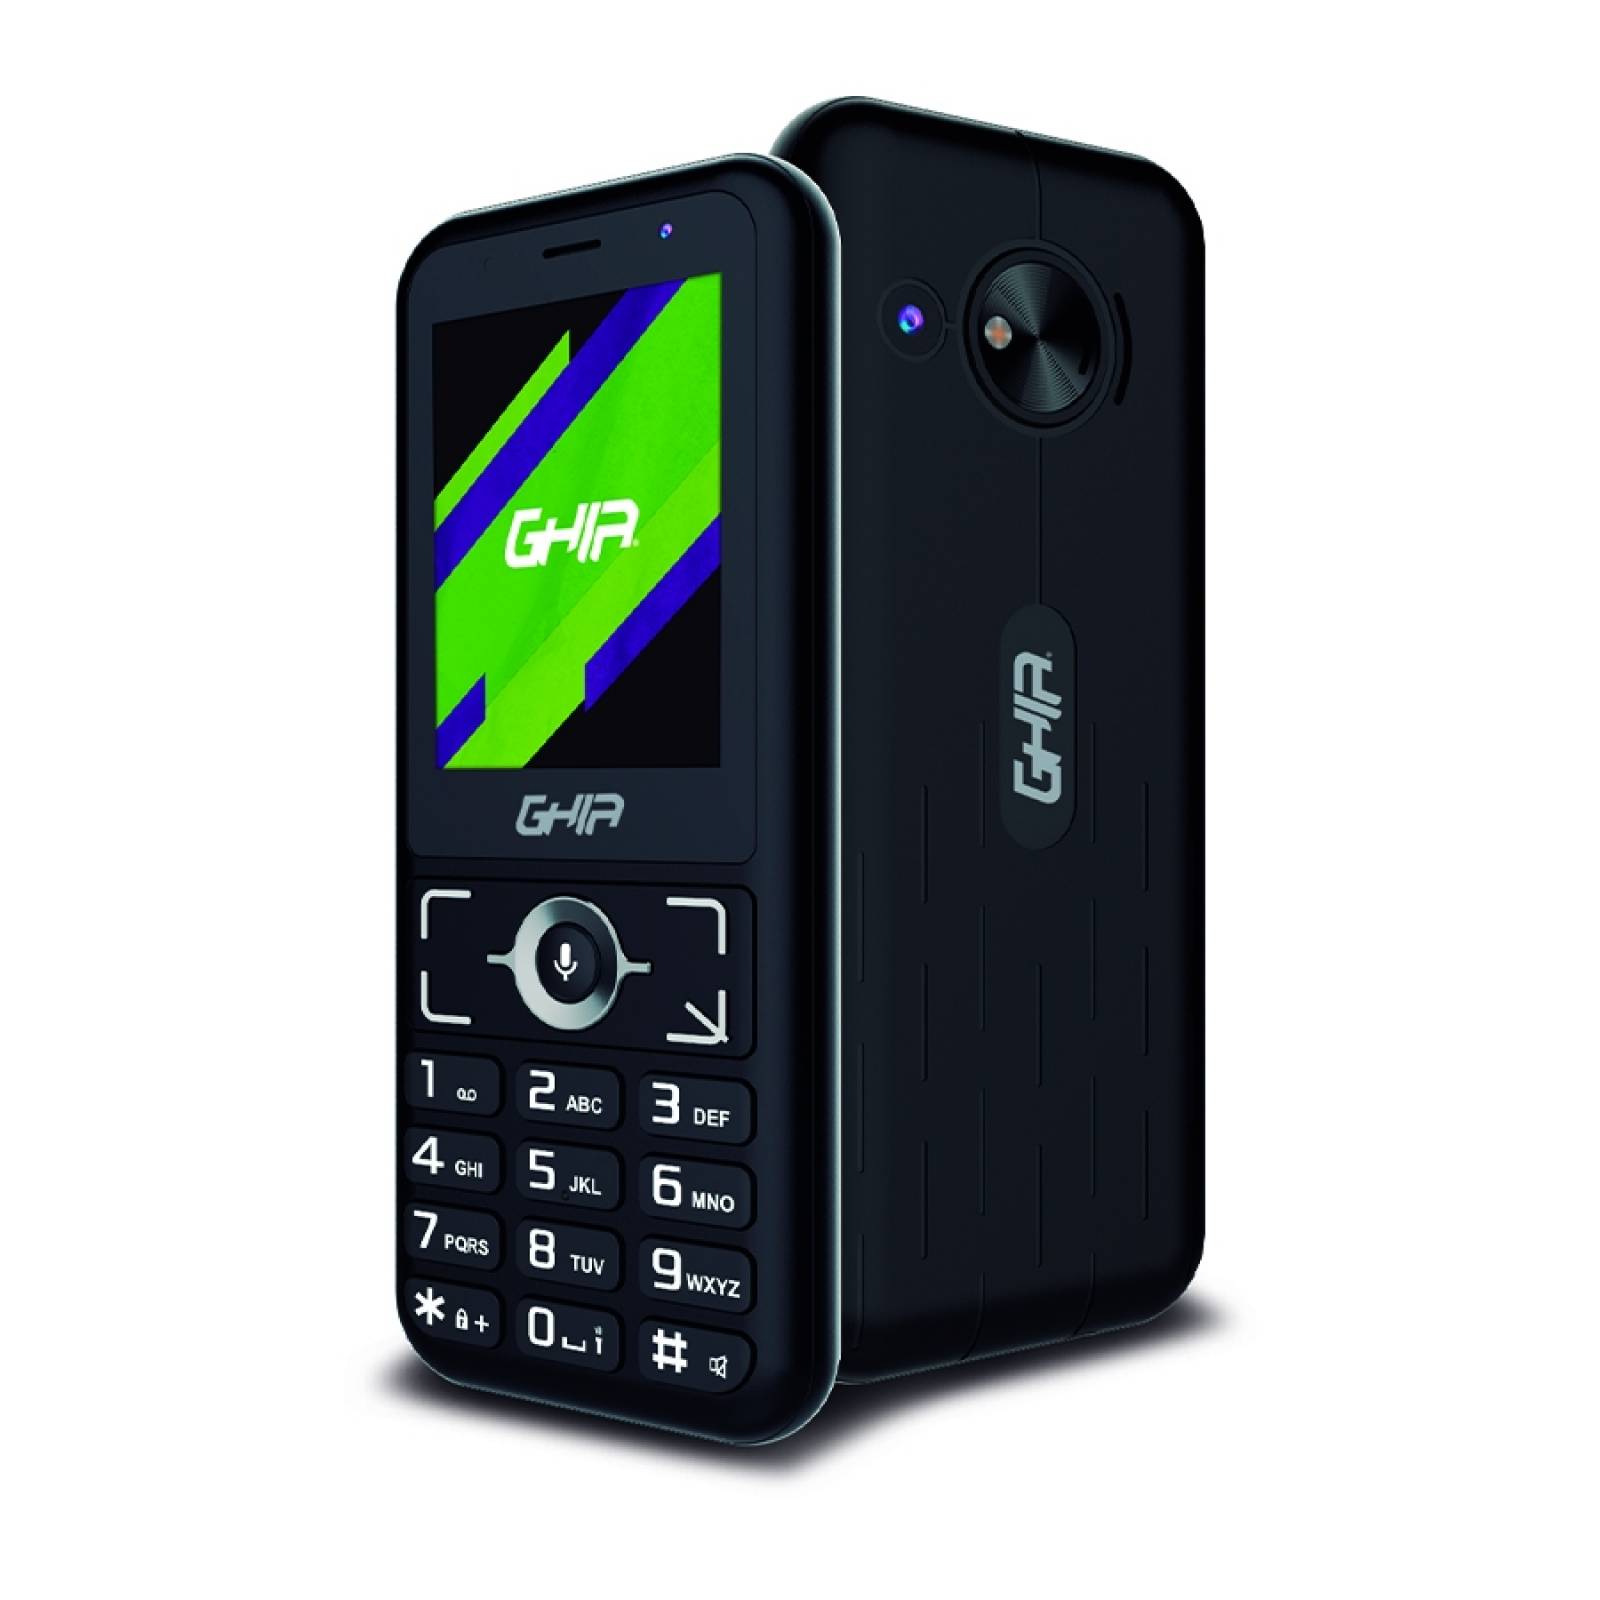 Smartphone Libre Barato y Bueno, teléfono móvil Barato 3G con